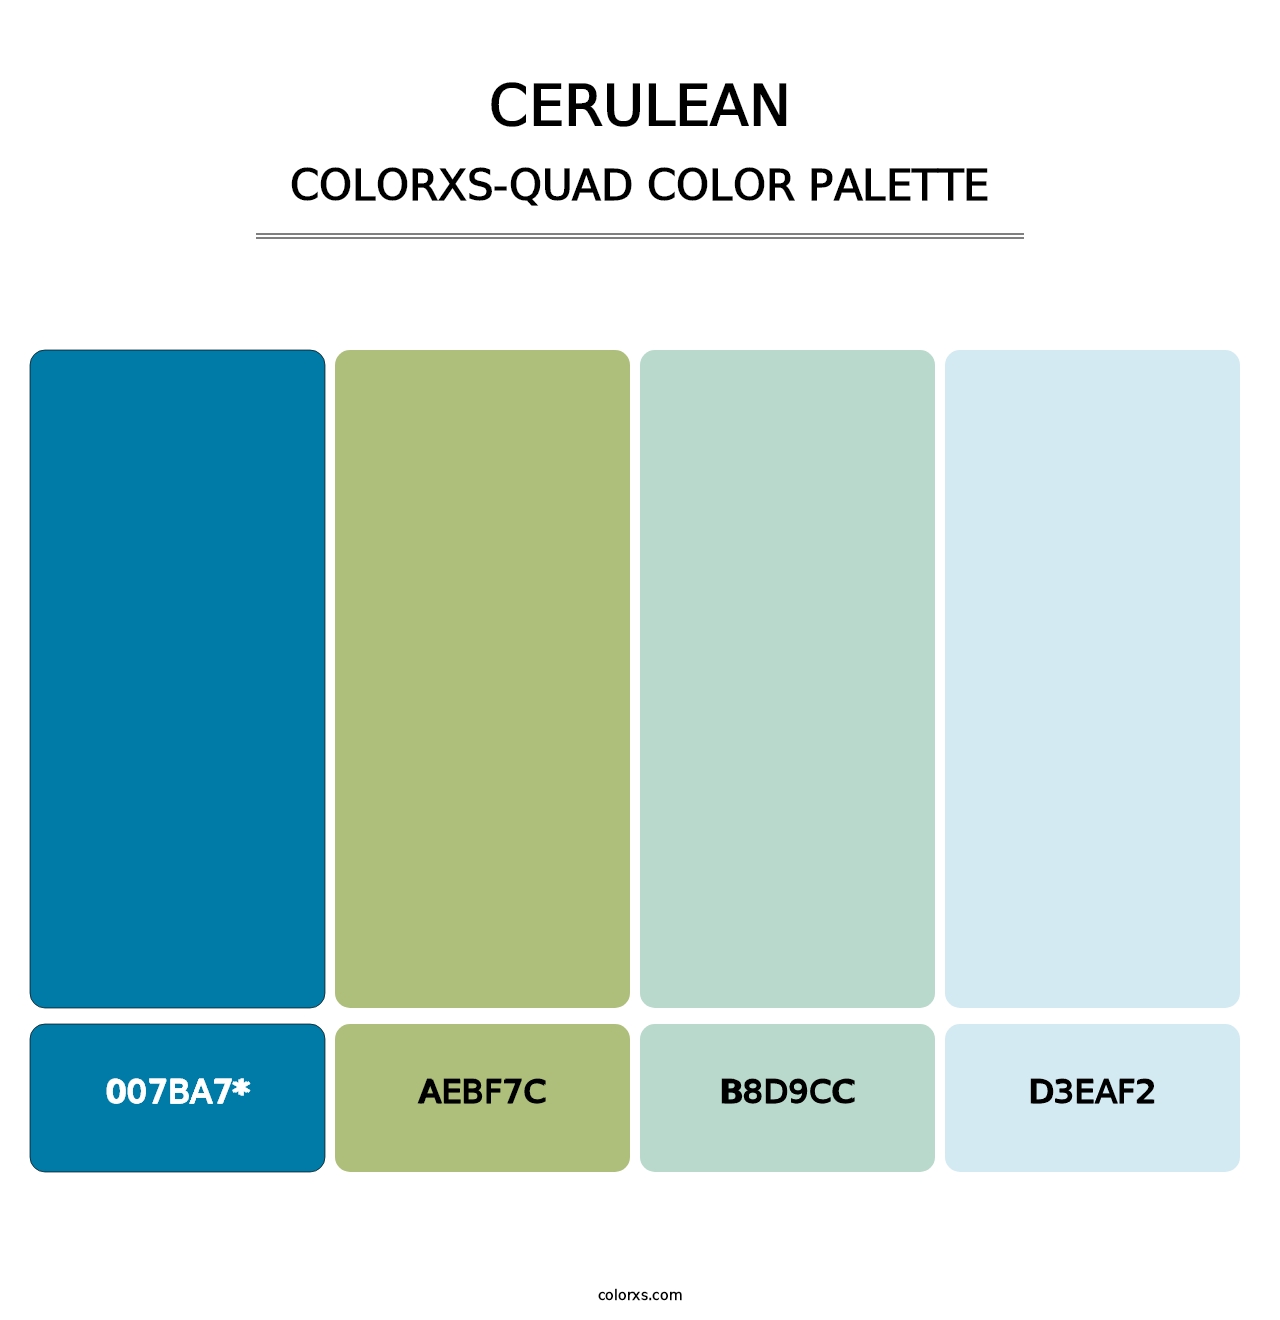 Cerulean - Colorxs Quad Palette